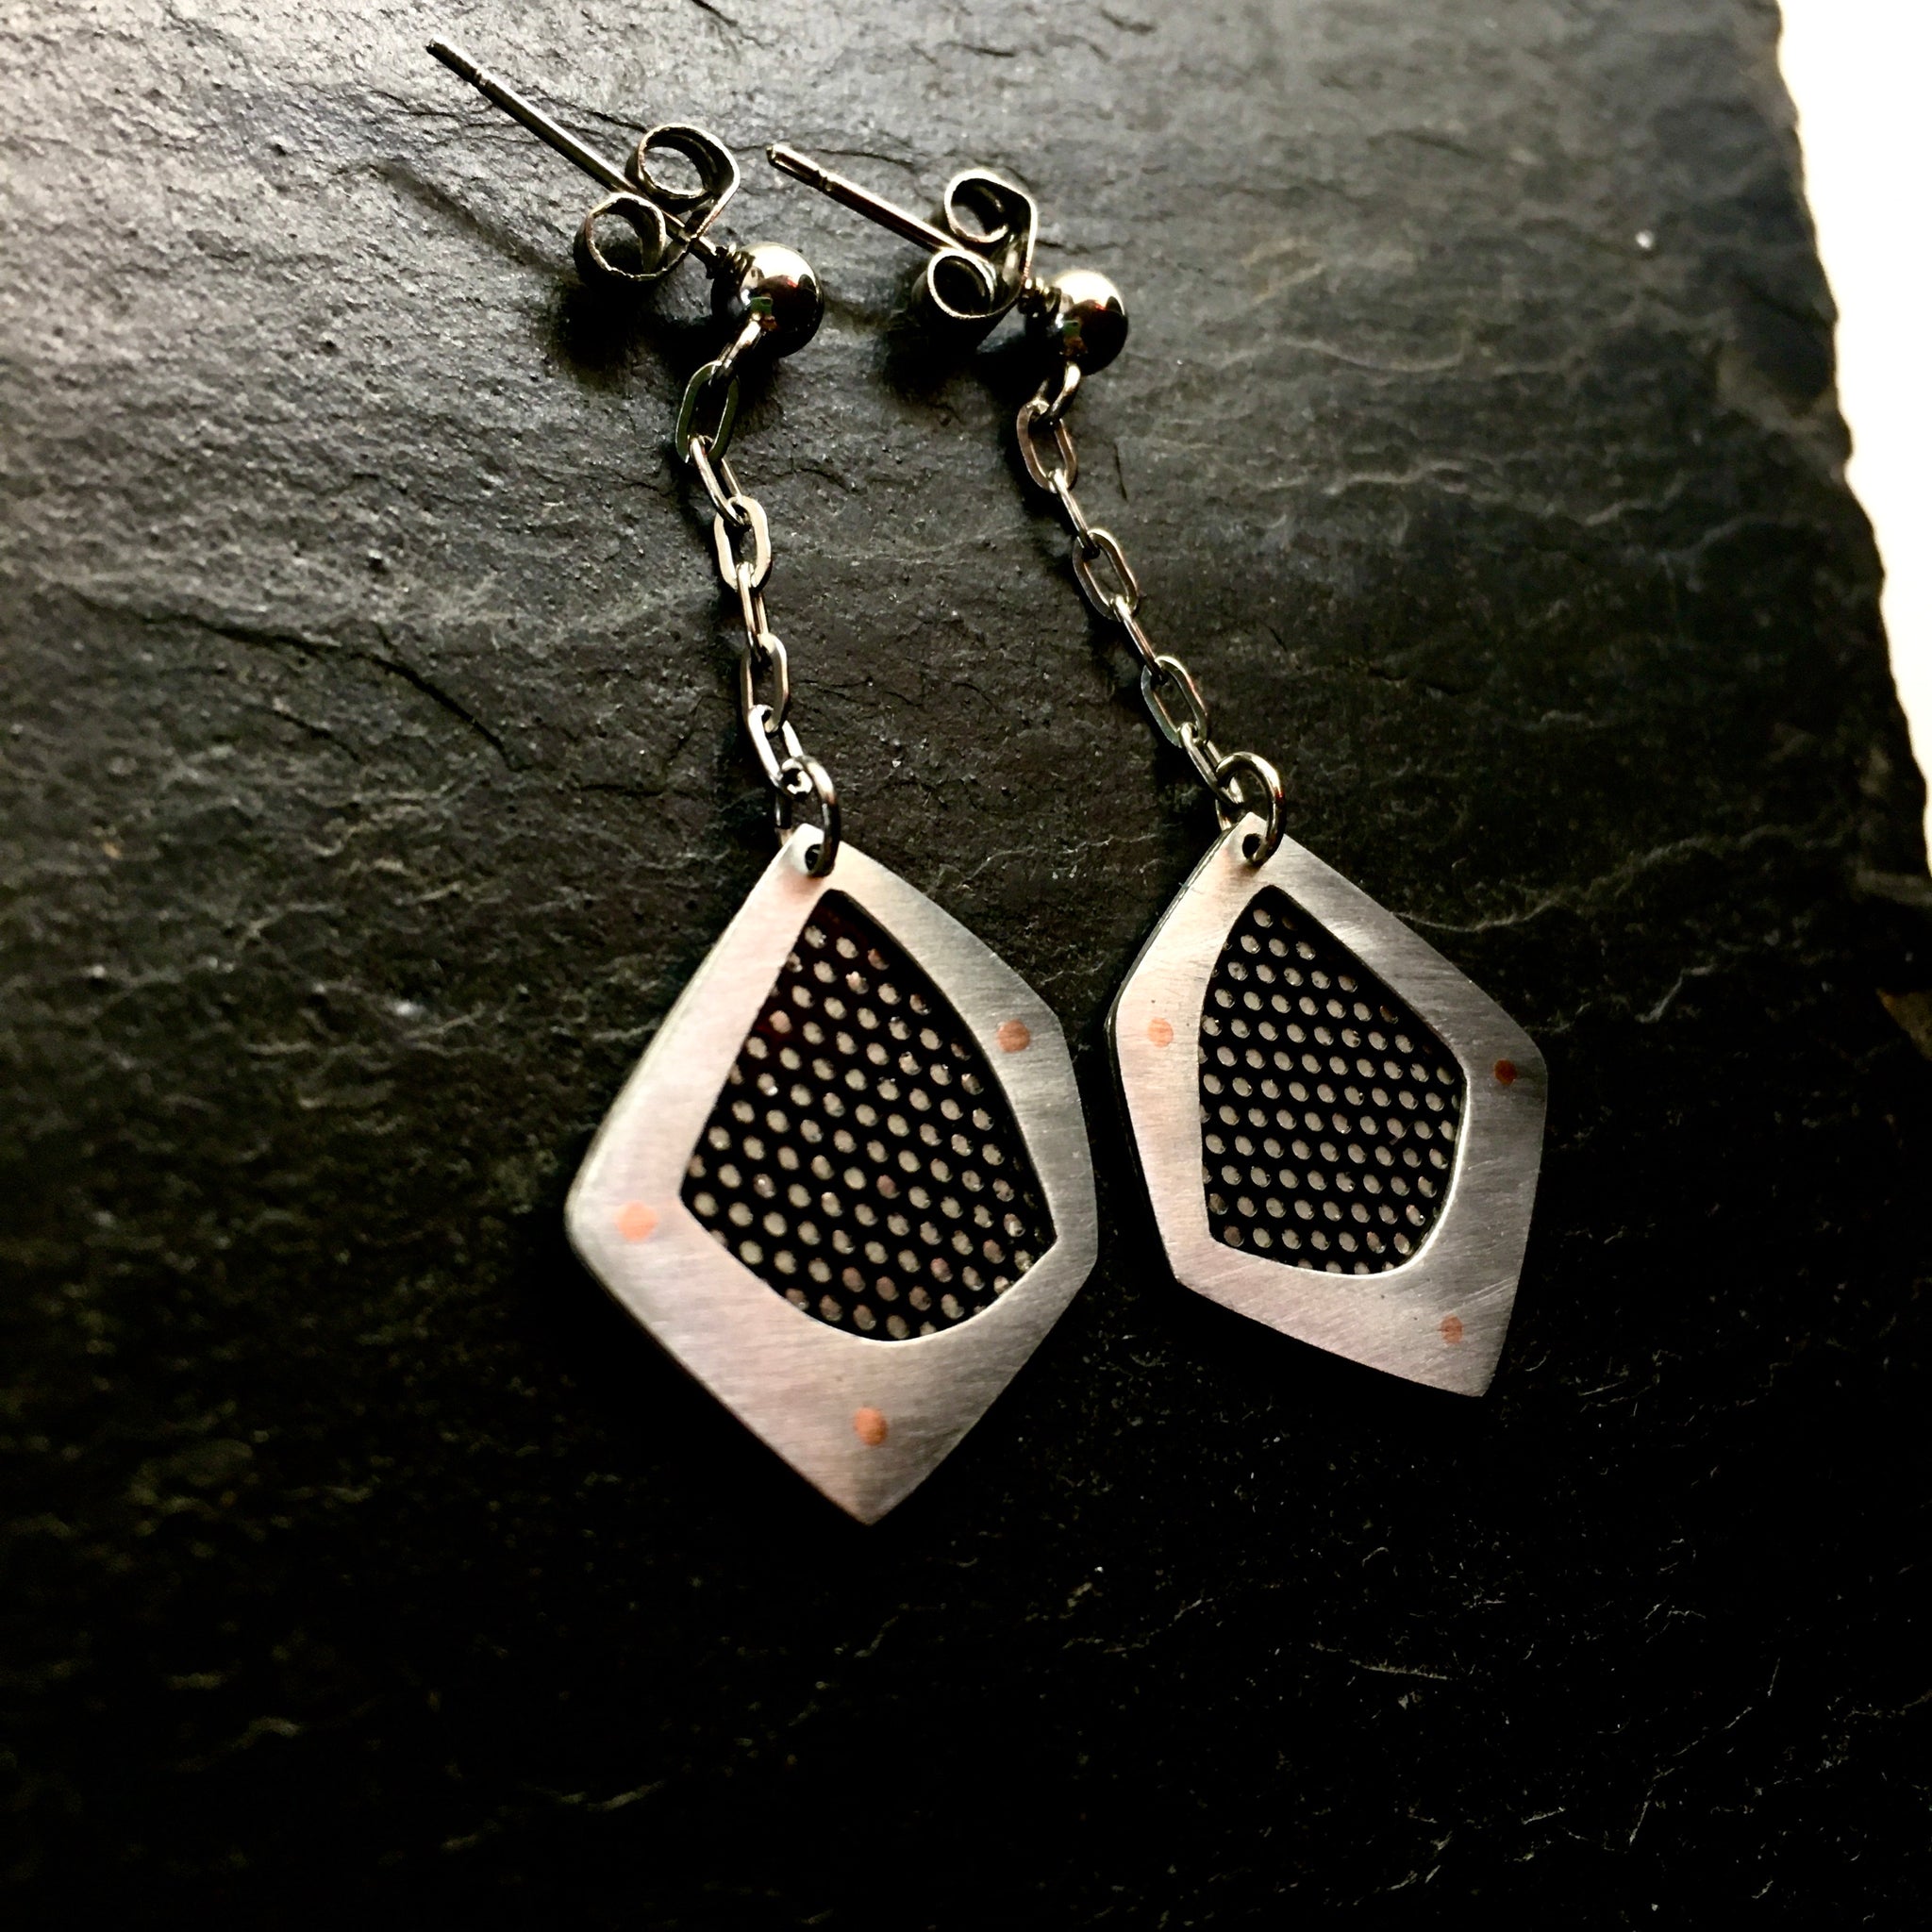 Steel fan casing earrings